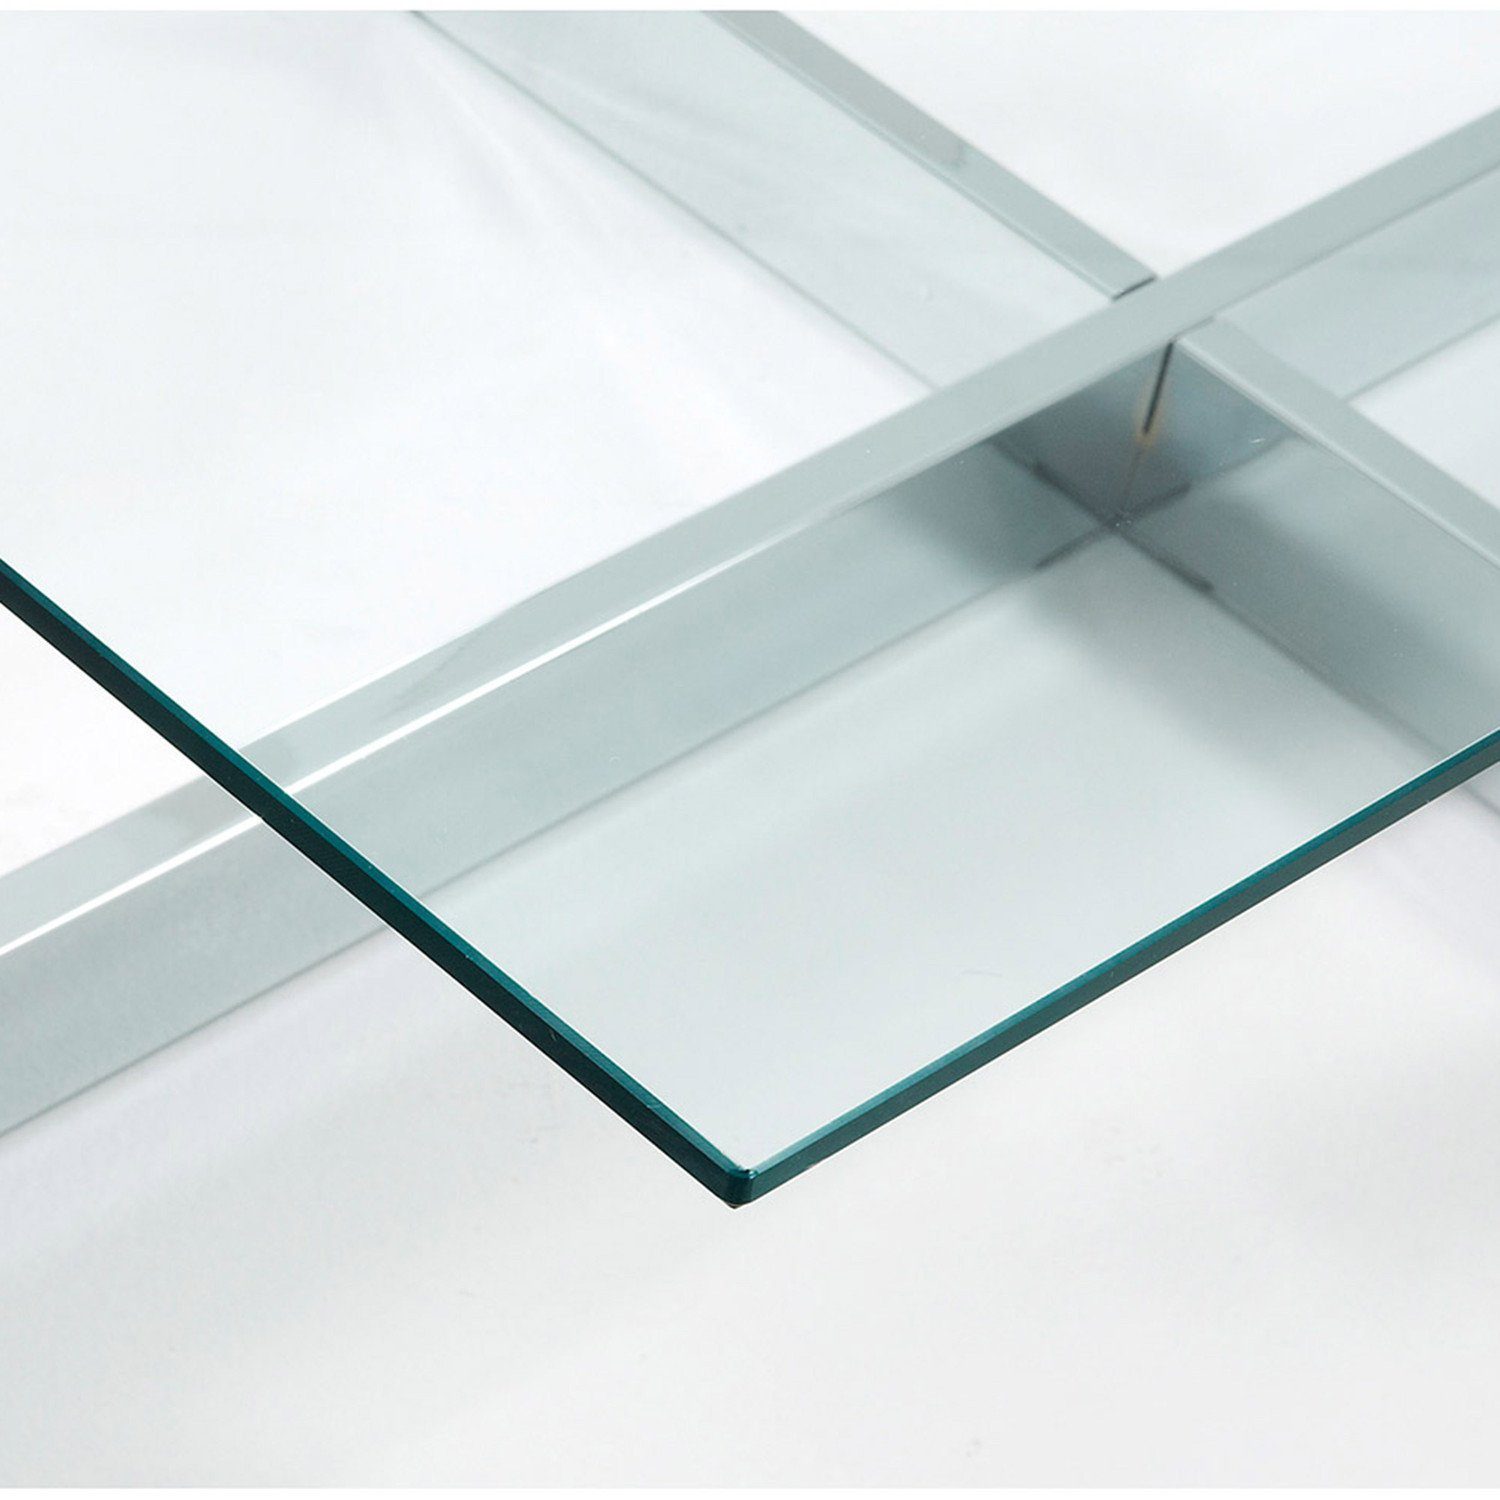 mit Couchtisch 120x70cm Glas Chrom-Finish Beistelltisch Tisch Plam Stahlstruktur Natur24